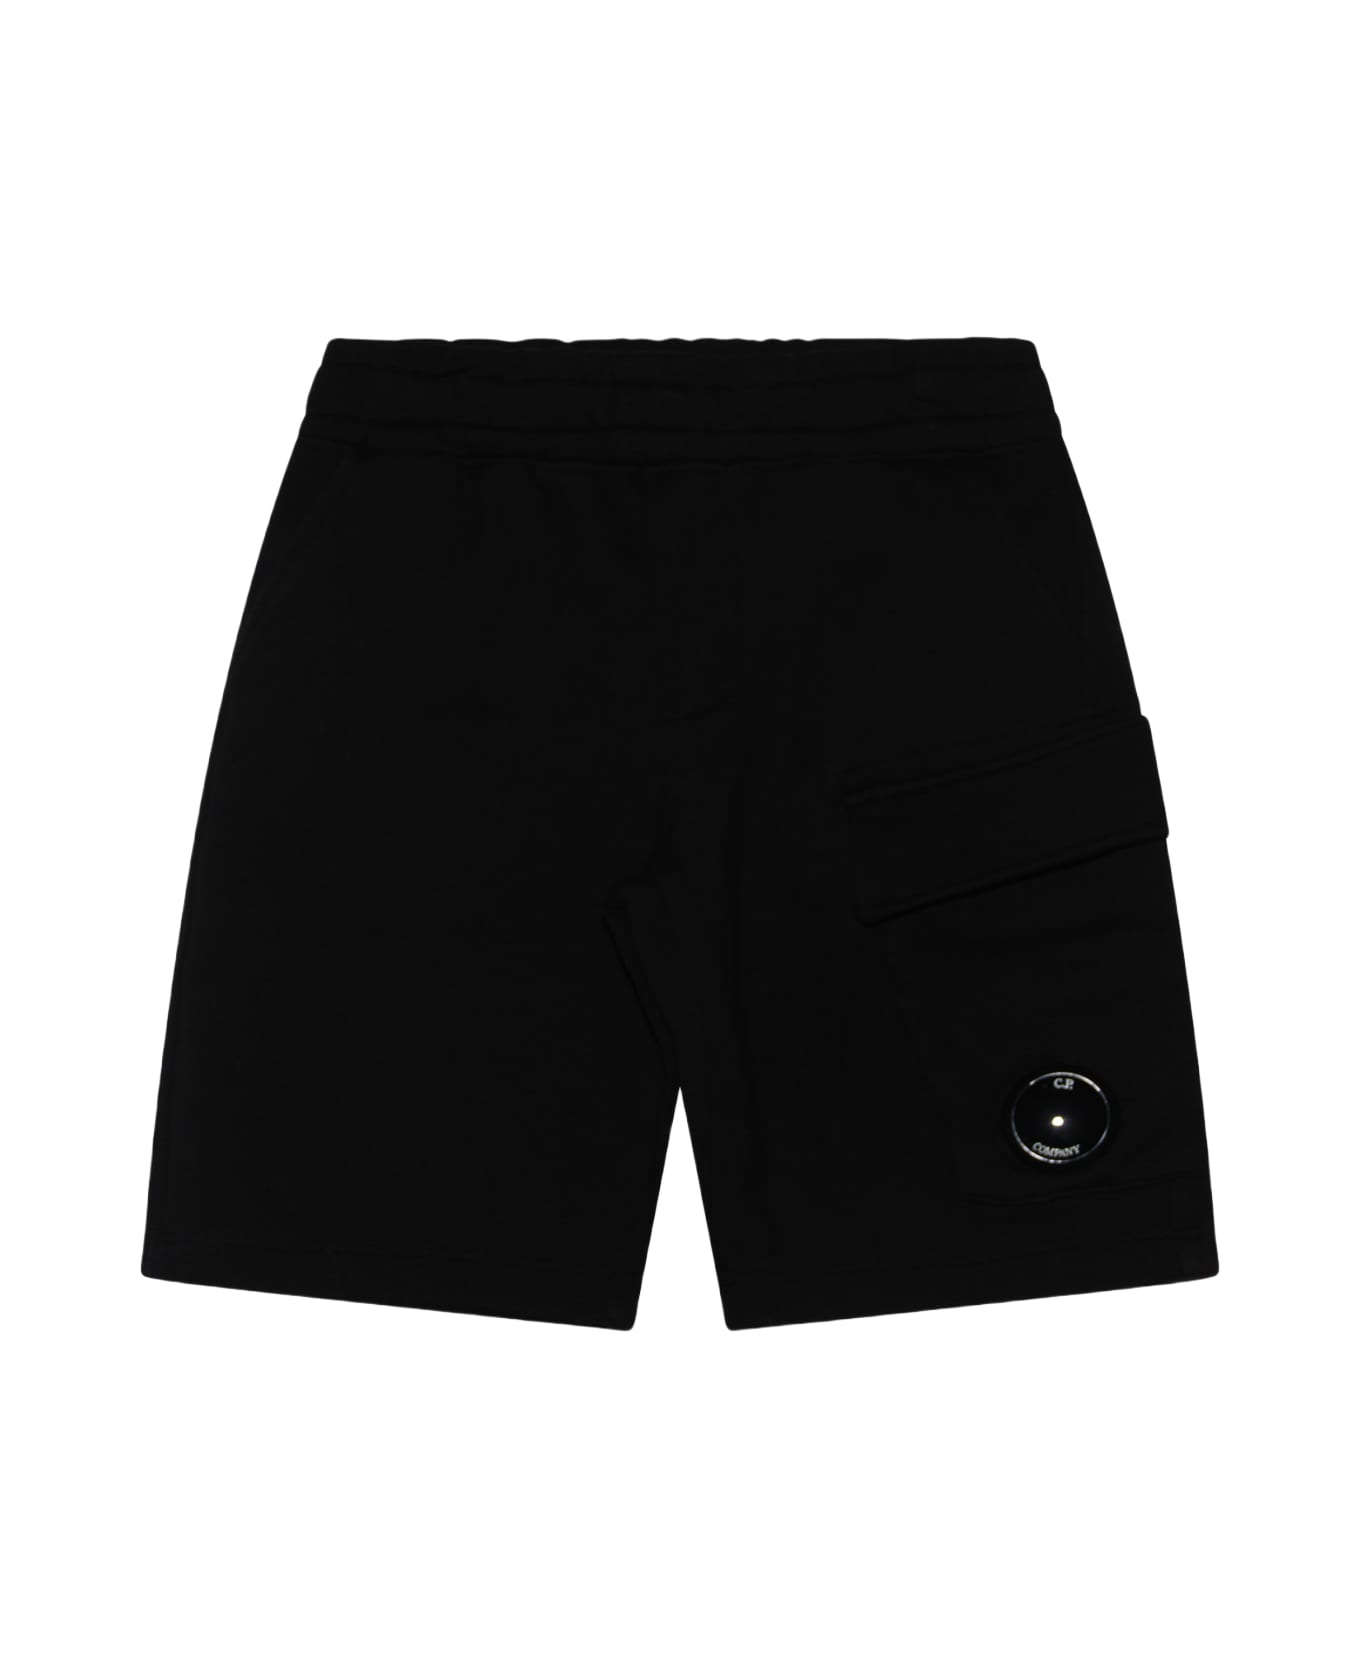 C.P. Company Black Cotton Bermuda Shorts - NERO/BLACK